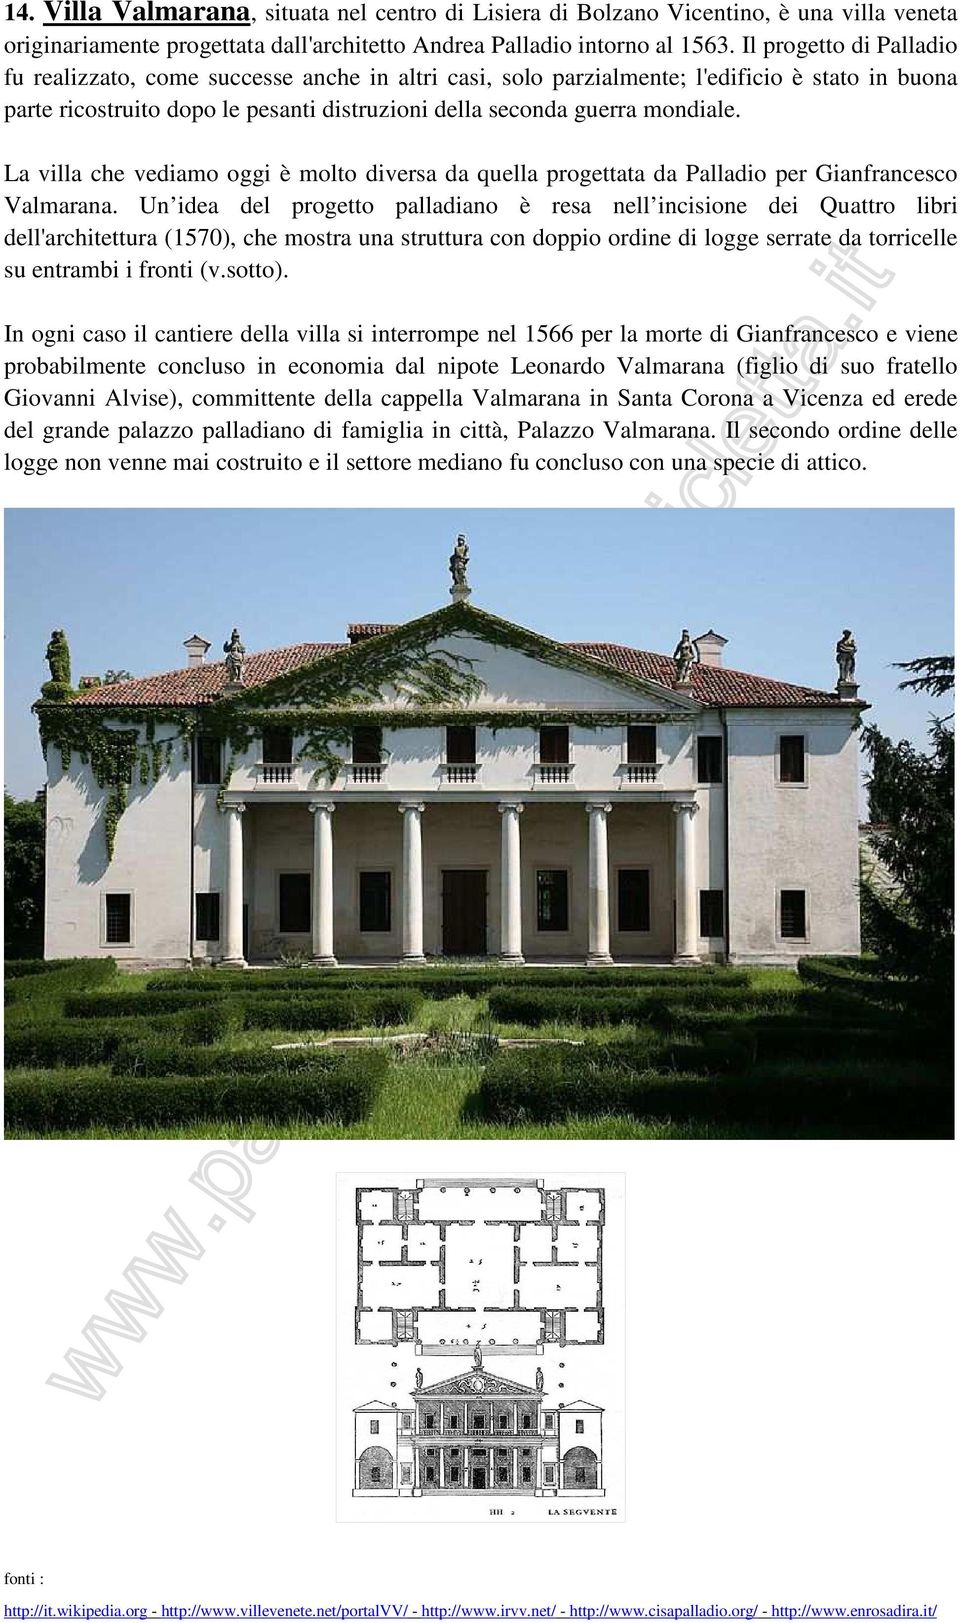 La villa che vediamo oggi è molto diversa da quella progettata da Palladio per Gianfrancesco Valmarana.